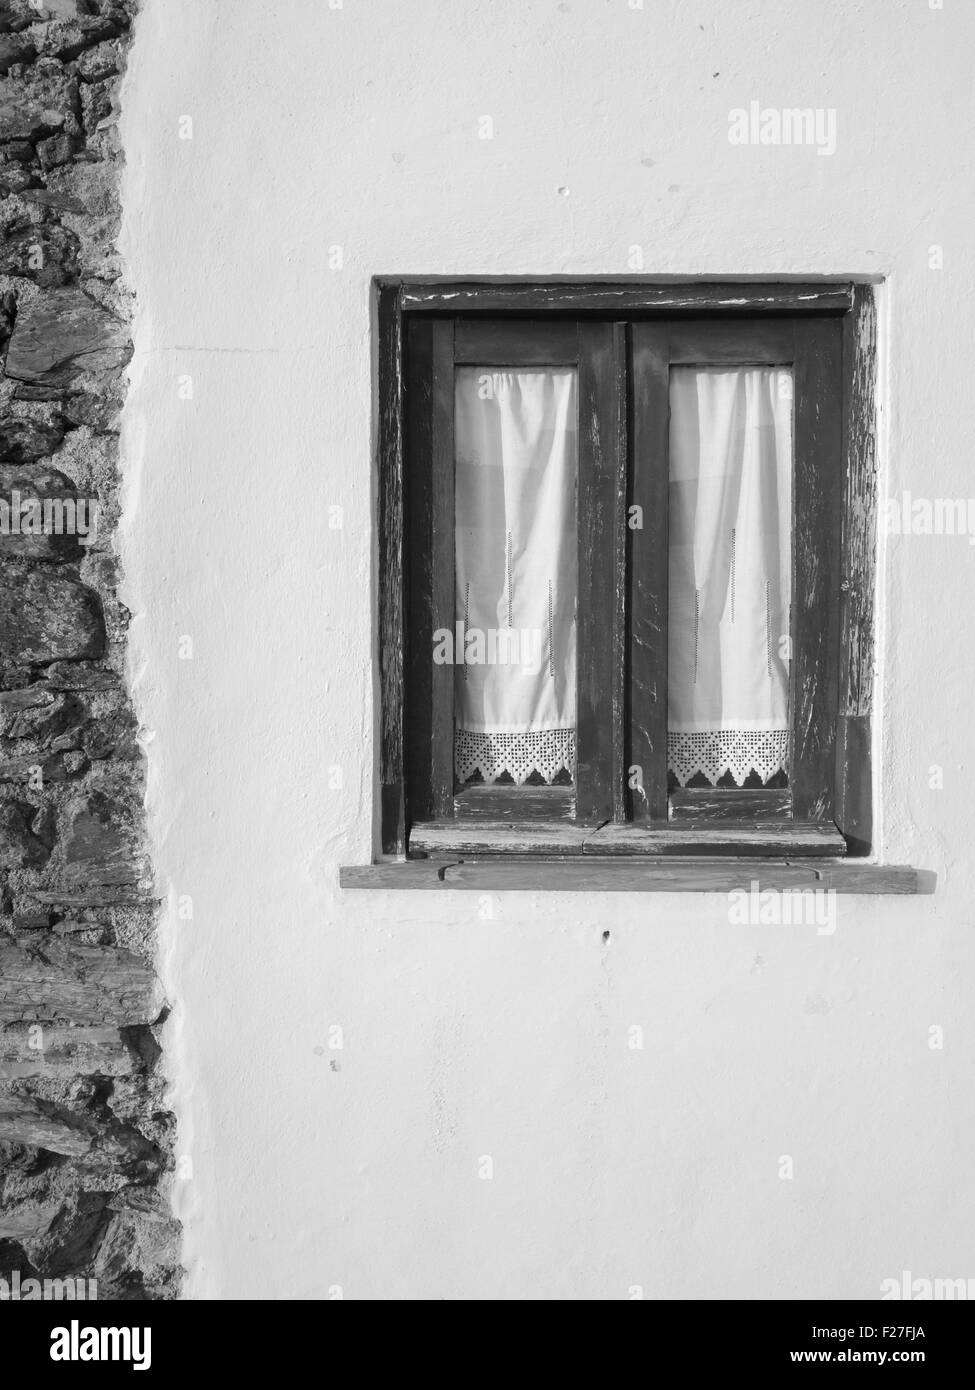 Noir et blanc photo de vieille maison fenêtre avec rideaux traditionnels Banque D'Images